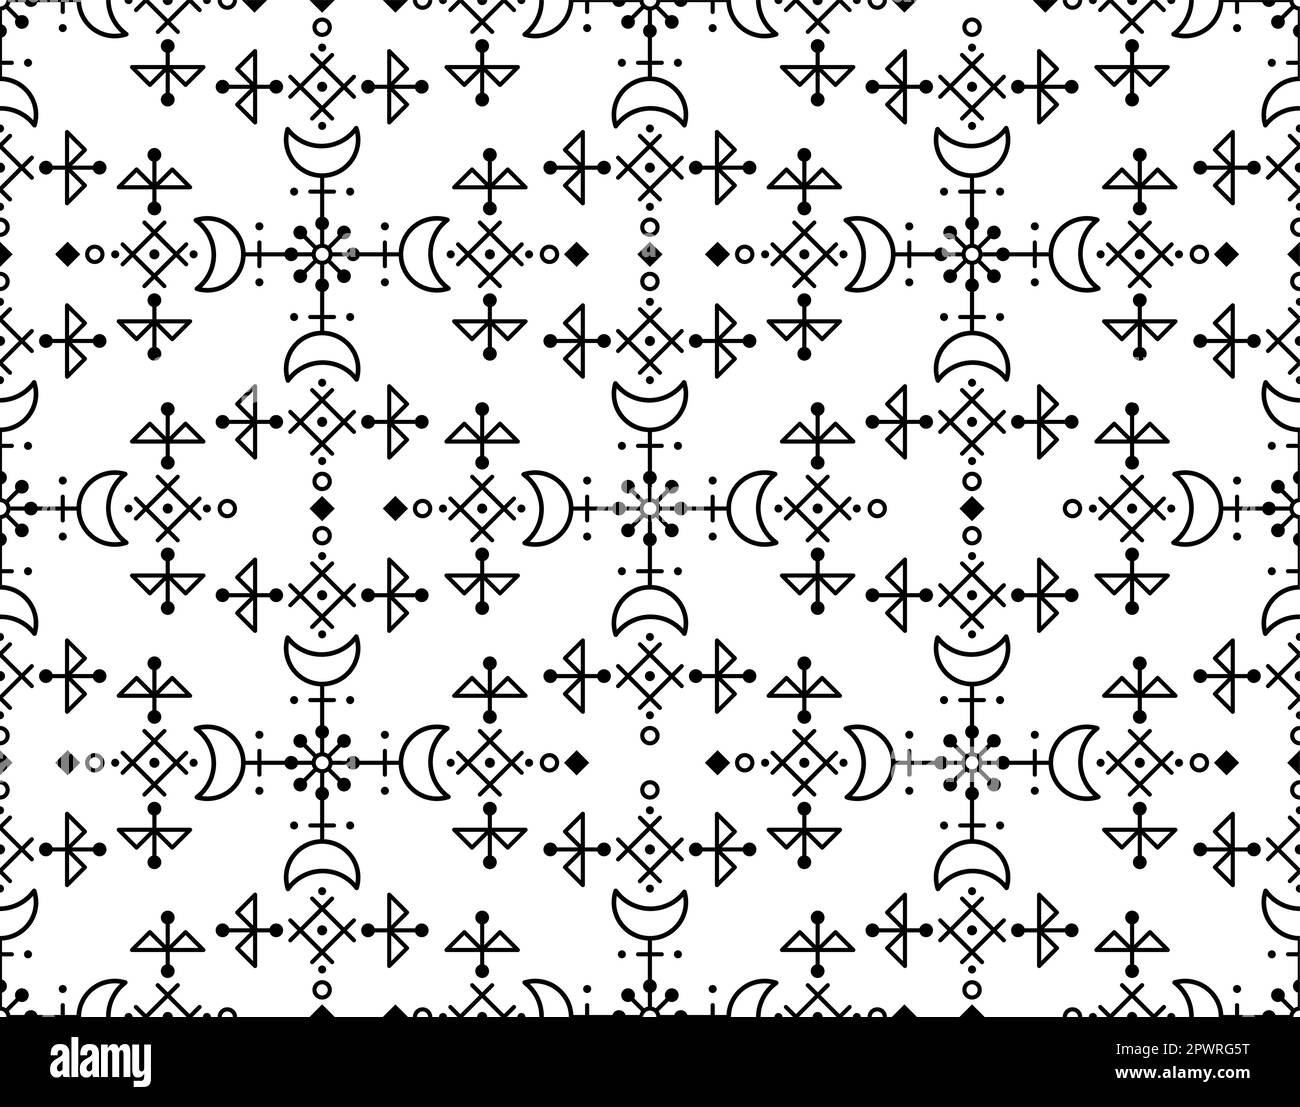 Motif vectoriel d'art folklorique d'inspiration islandaise avec motifs géométriques, lunes et fleurs Illustration de Vecteur